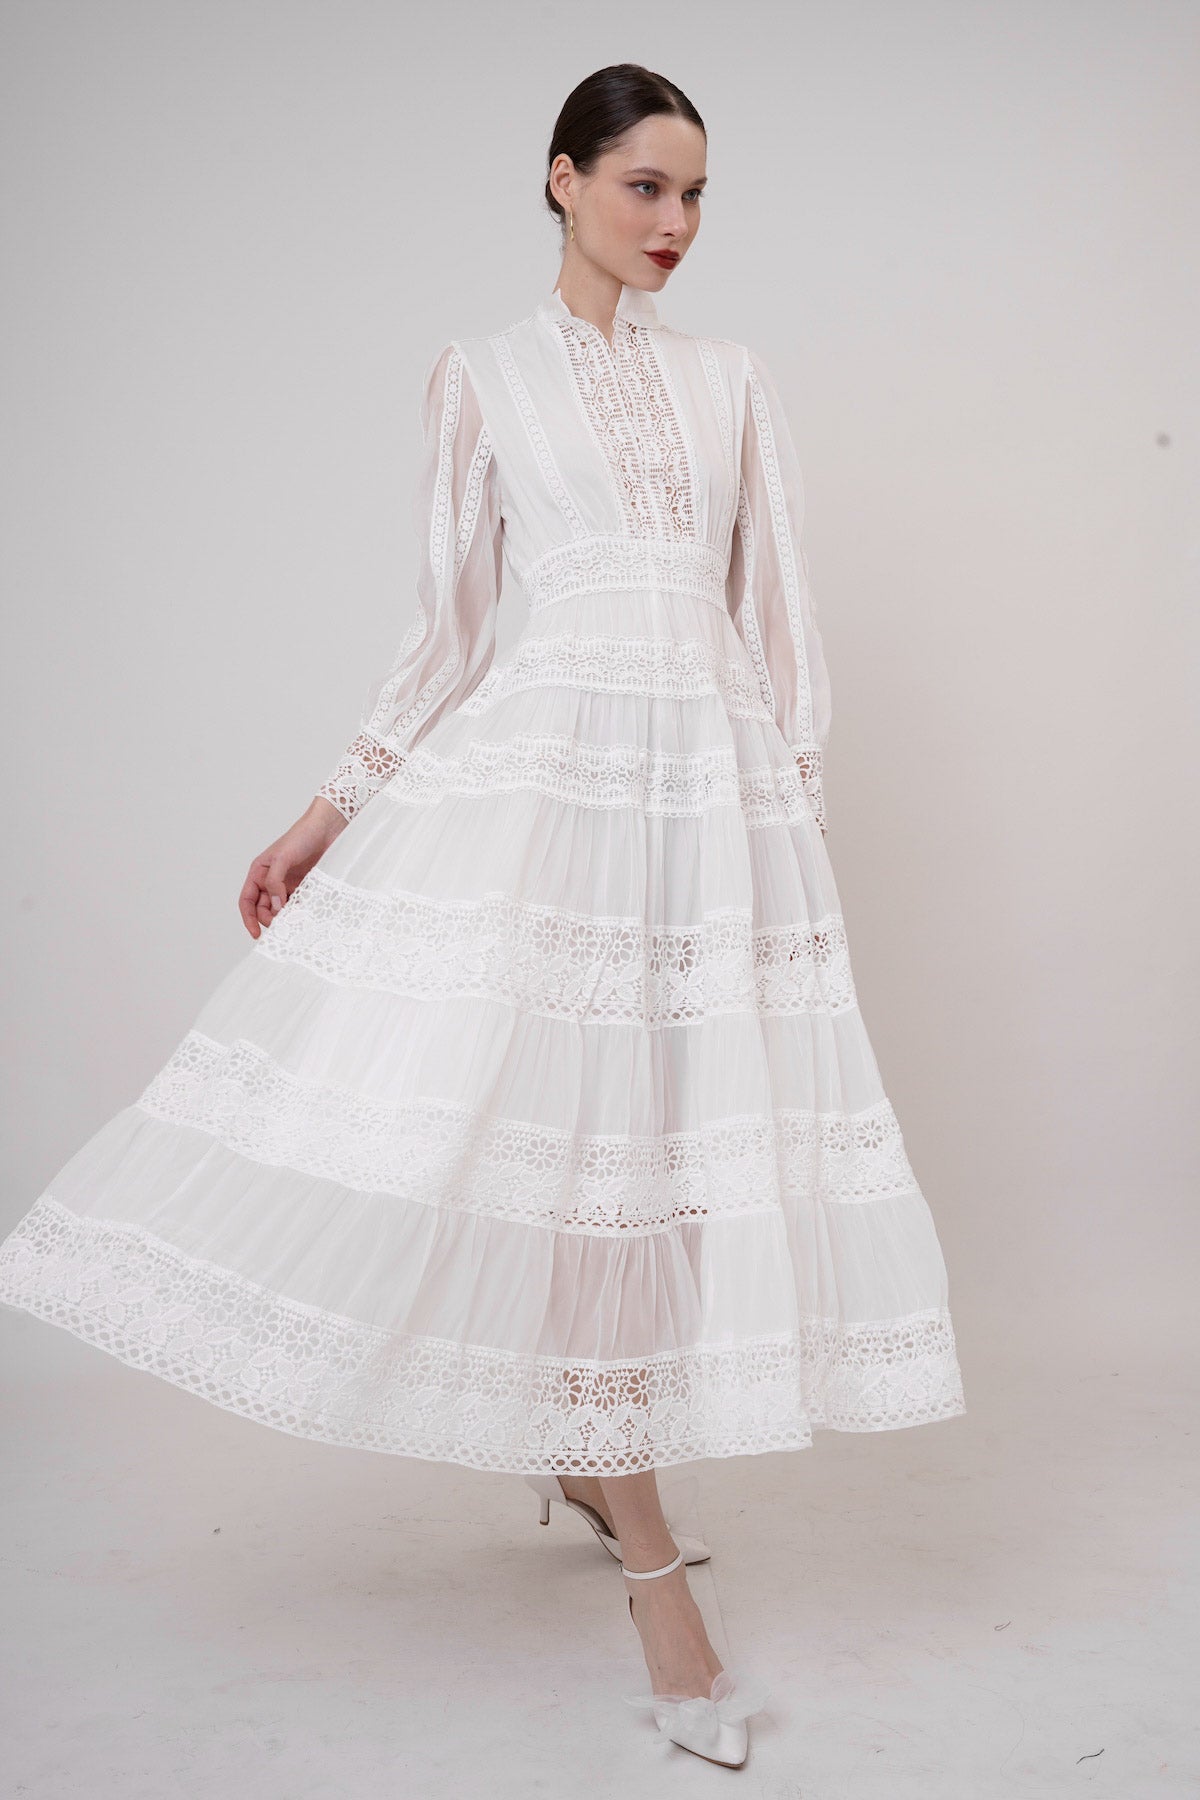 Ninette Dress In White